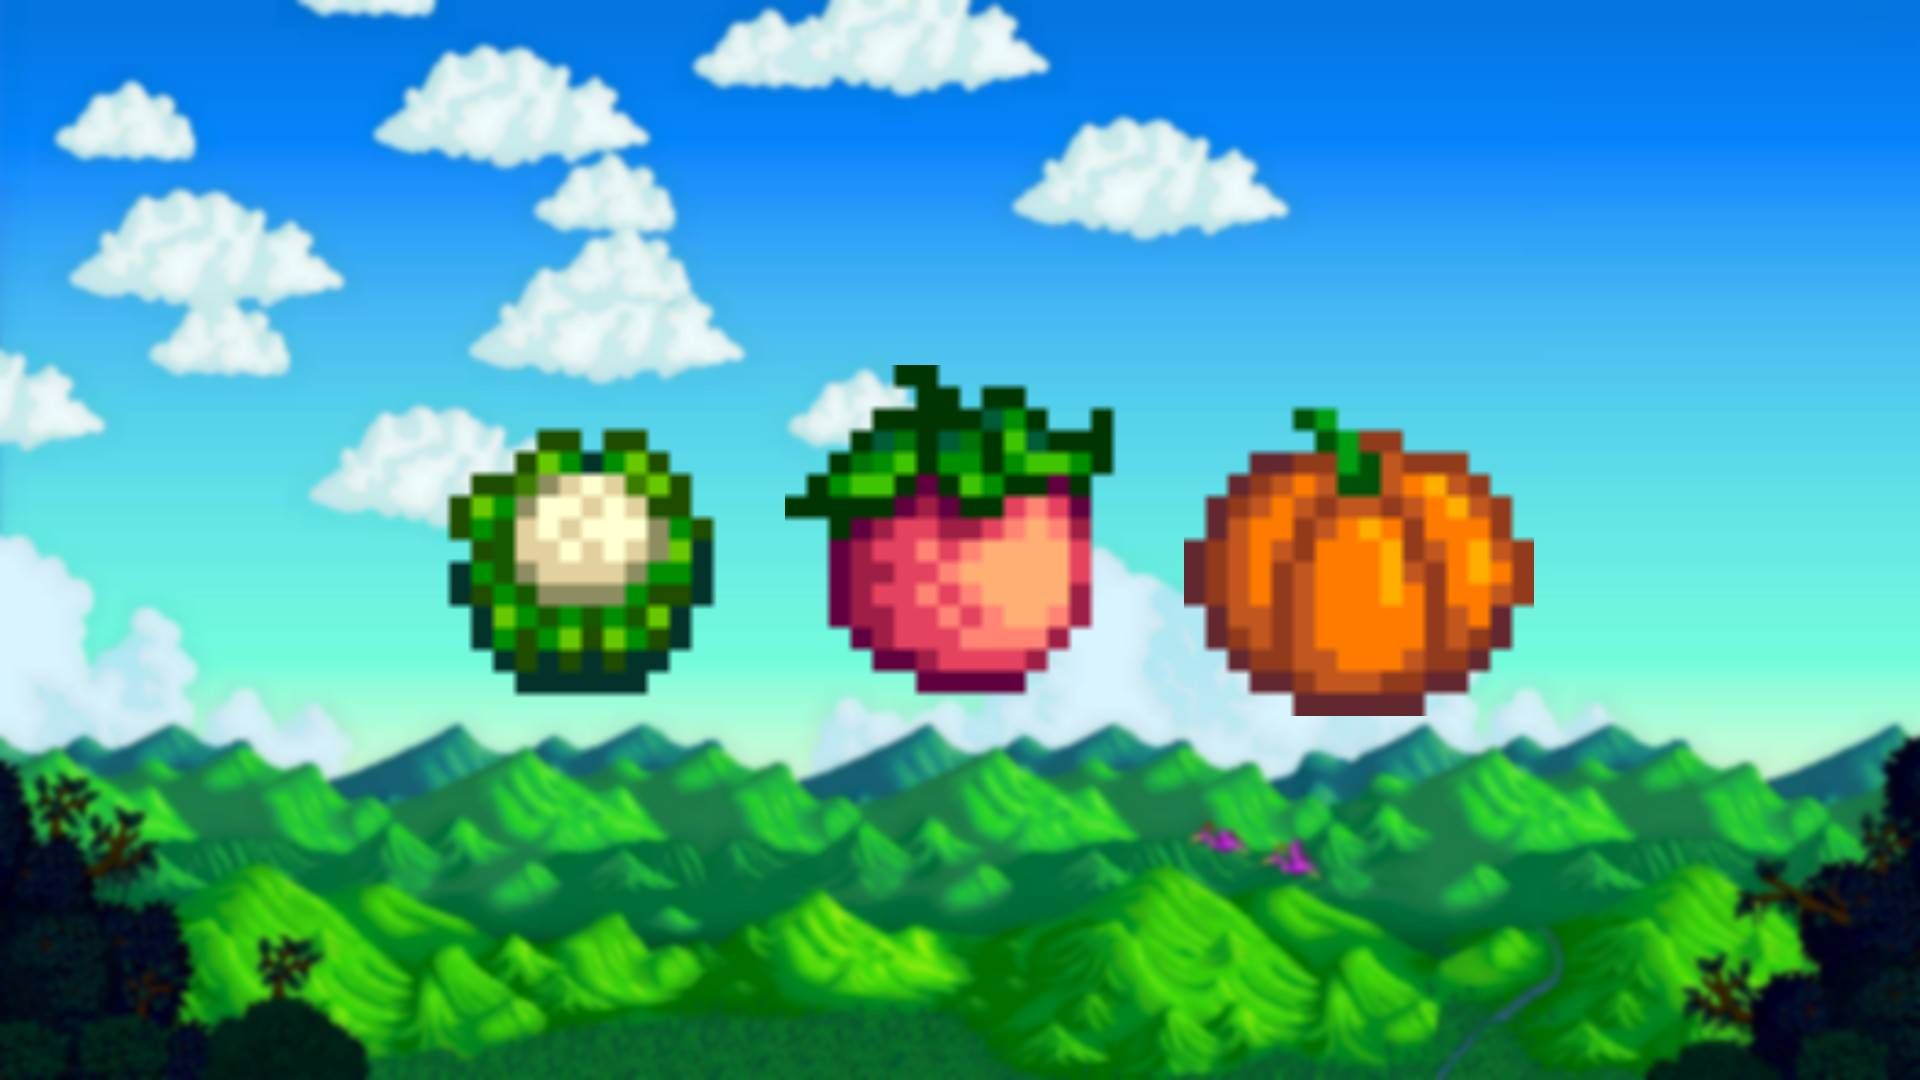 stardew valley best crops background with cauliflower, melon, and pumpkin